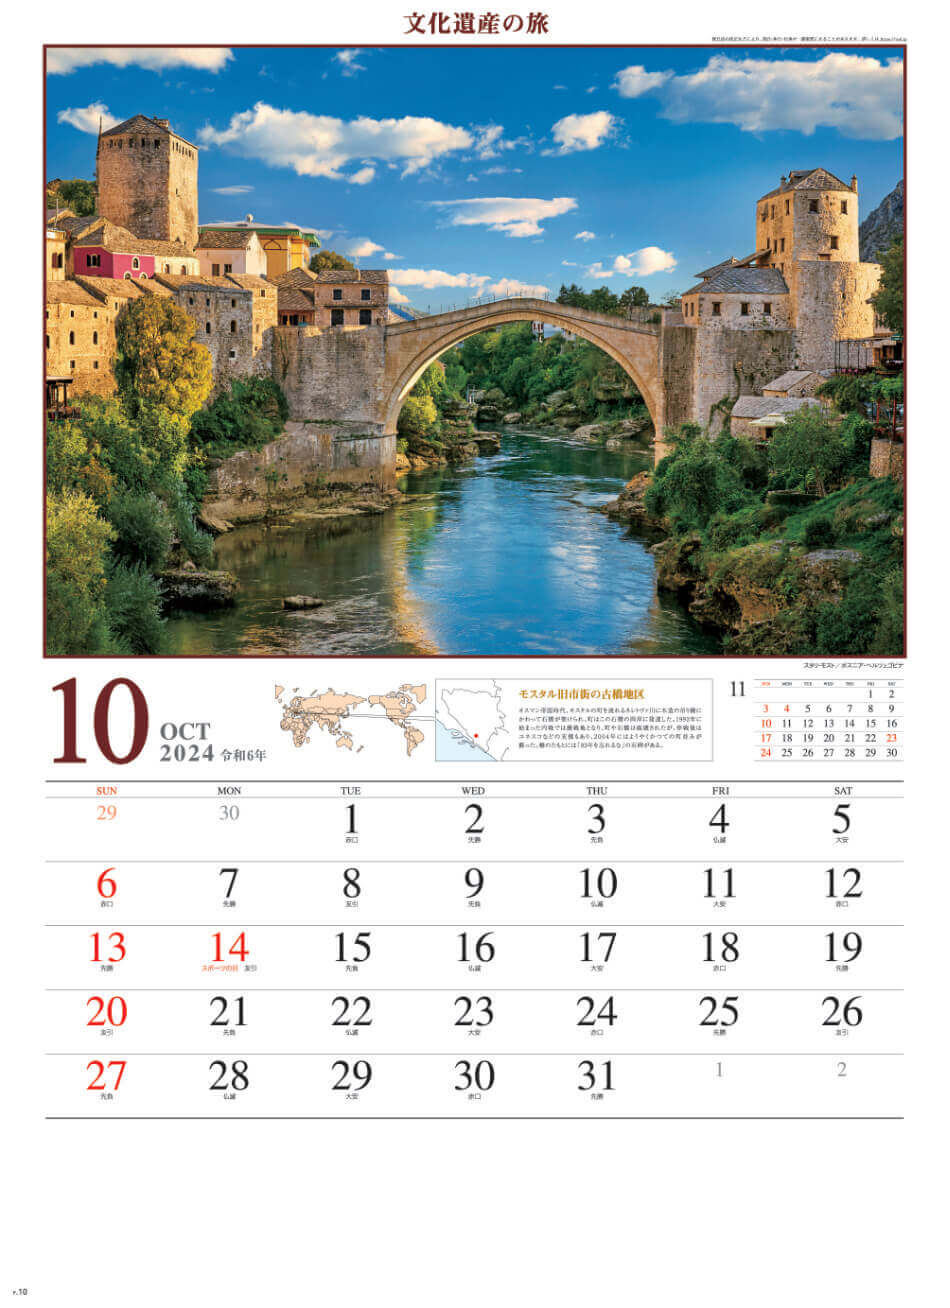 ボスニアヘレウツェゴビナ) 文化遺産の旅(ユネスコ世界遺産) 2024年カレンダーの画像